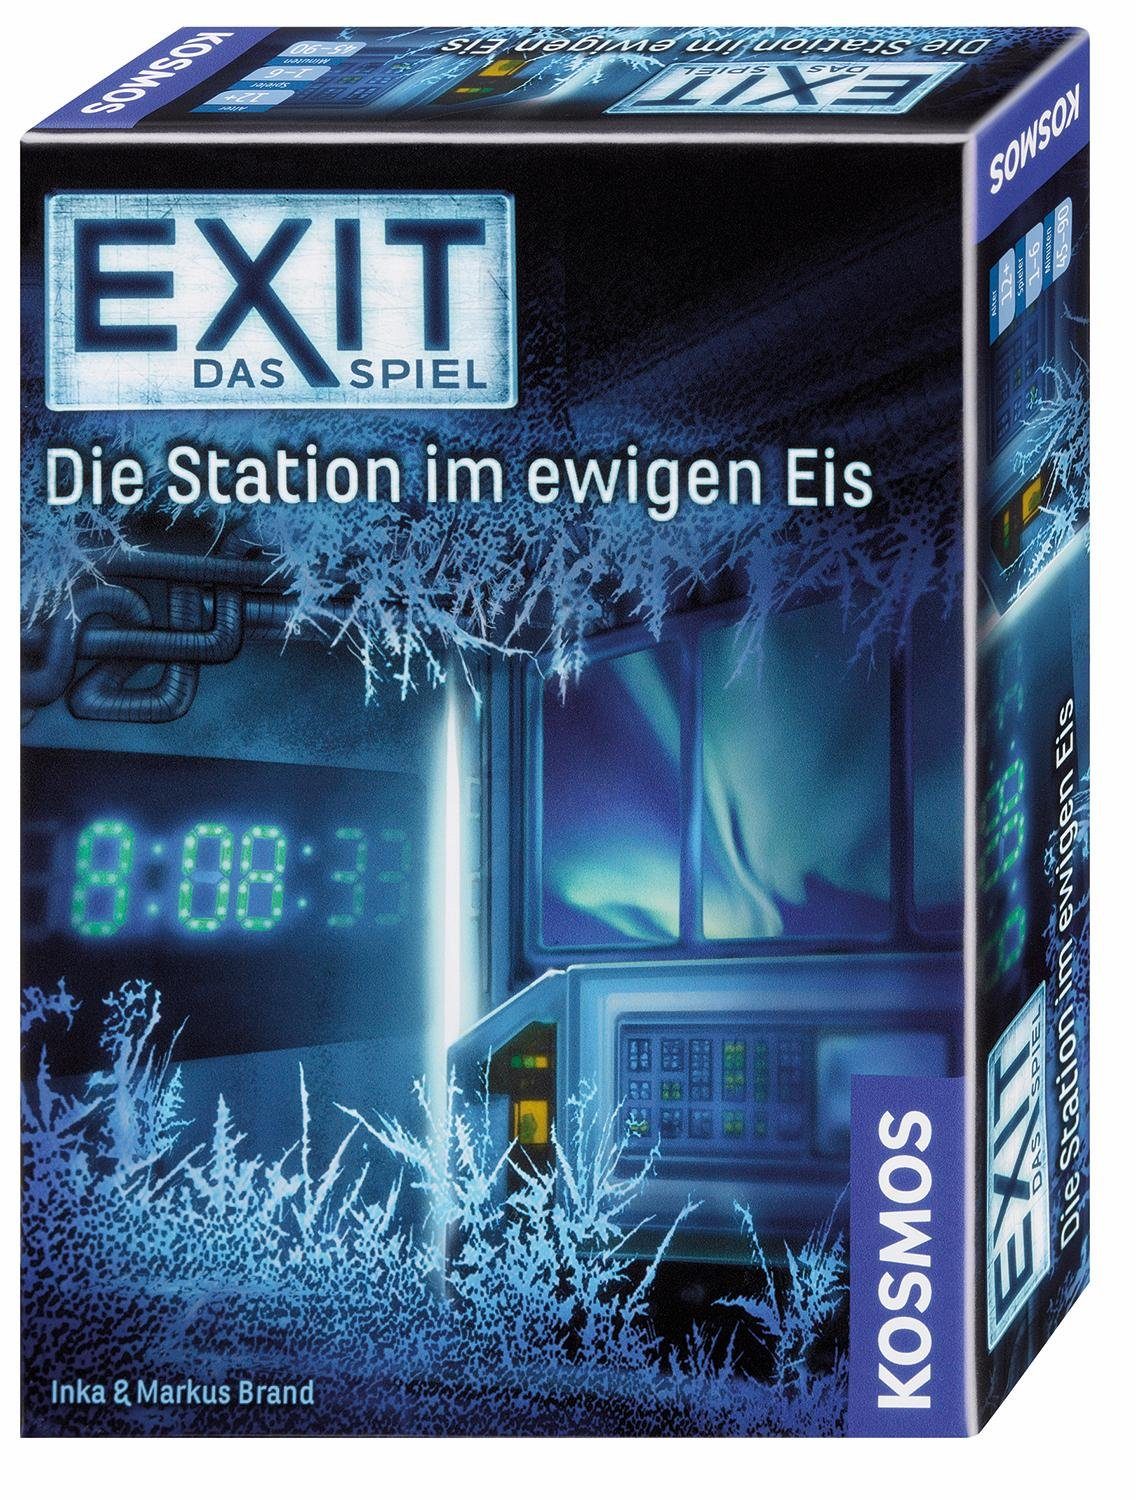 Kosmos Spiel, Exit Das Germany Station Made im Die Spiel, Eis, ewigen in